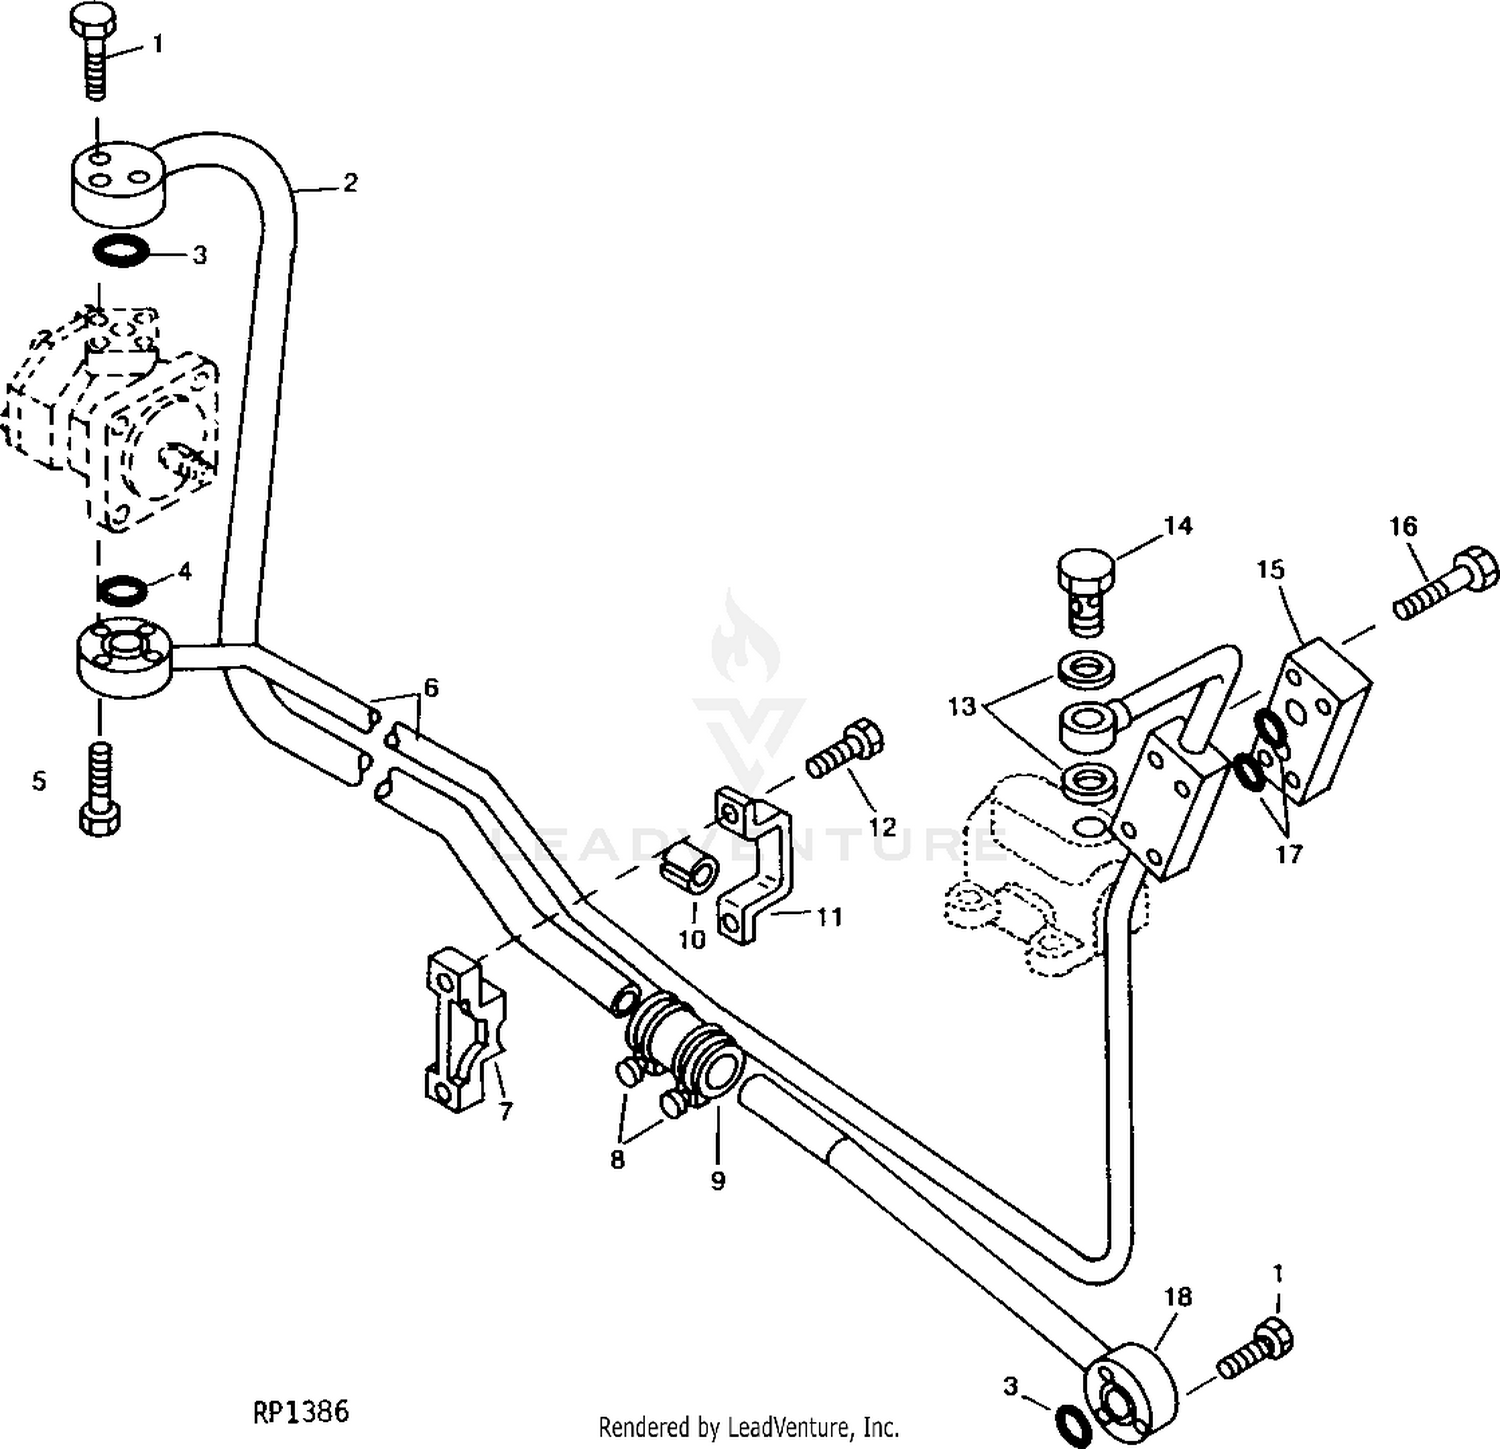 Back By Popular Demand! John Deere 140 Rear Hydraulic Kit-1, 54% OFF